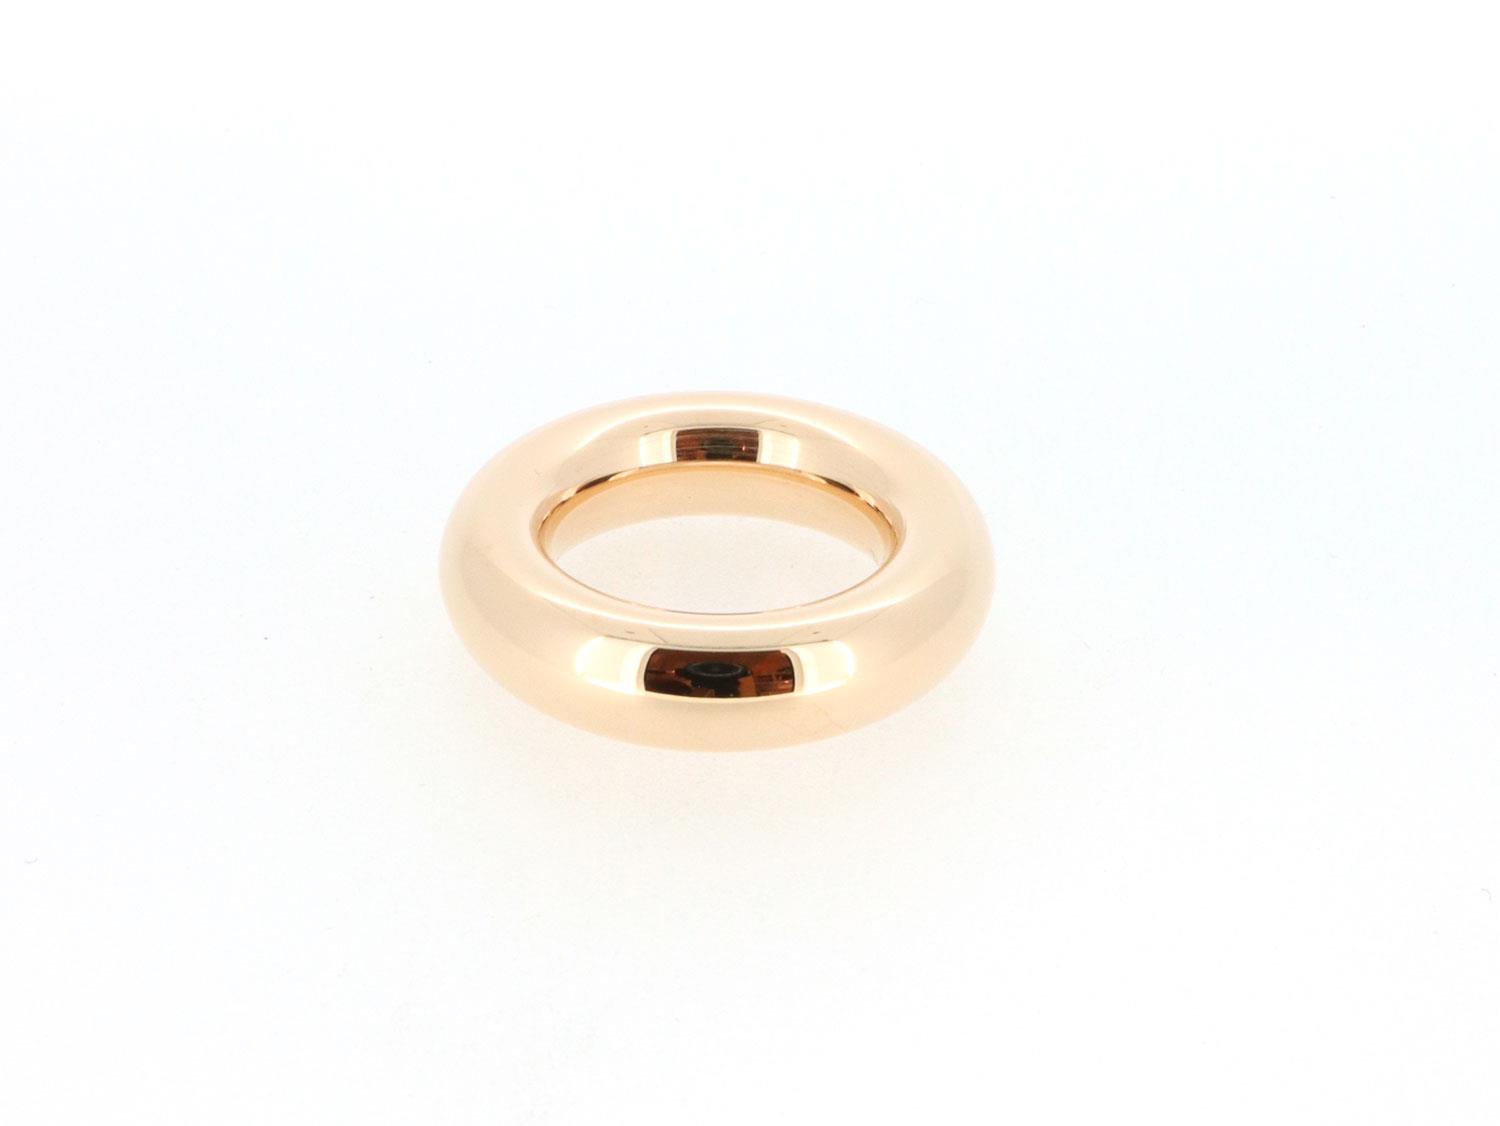 Ring massiv oval 925 Silber Rotgold plattiert - Emil Brenk - 020502gpl.rg